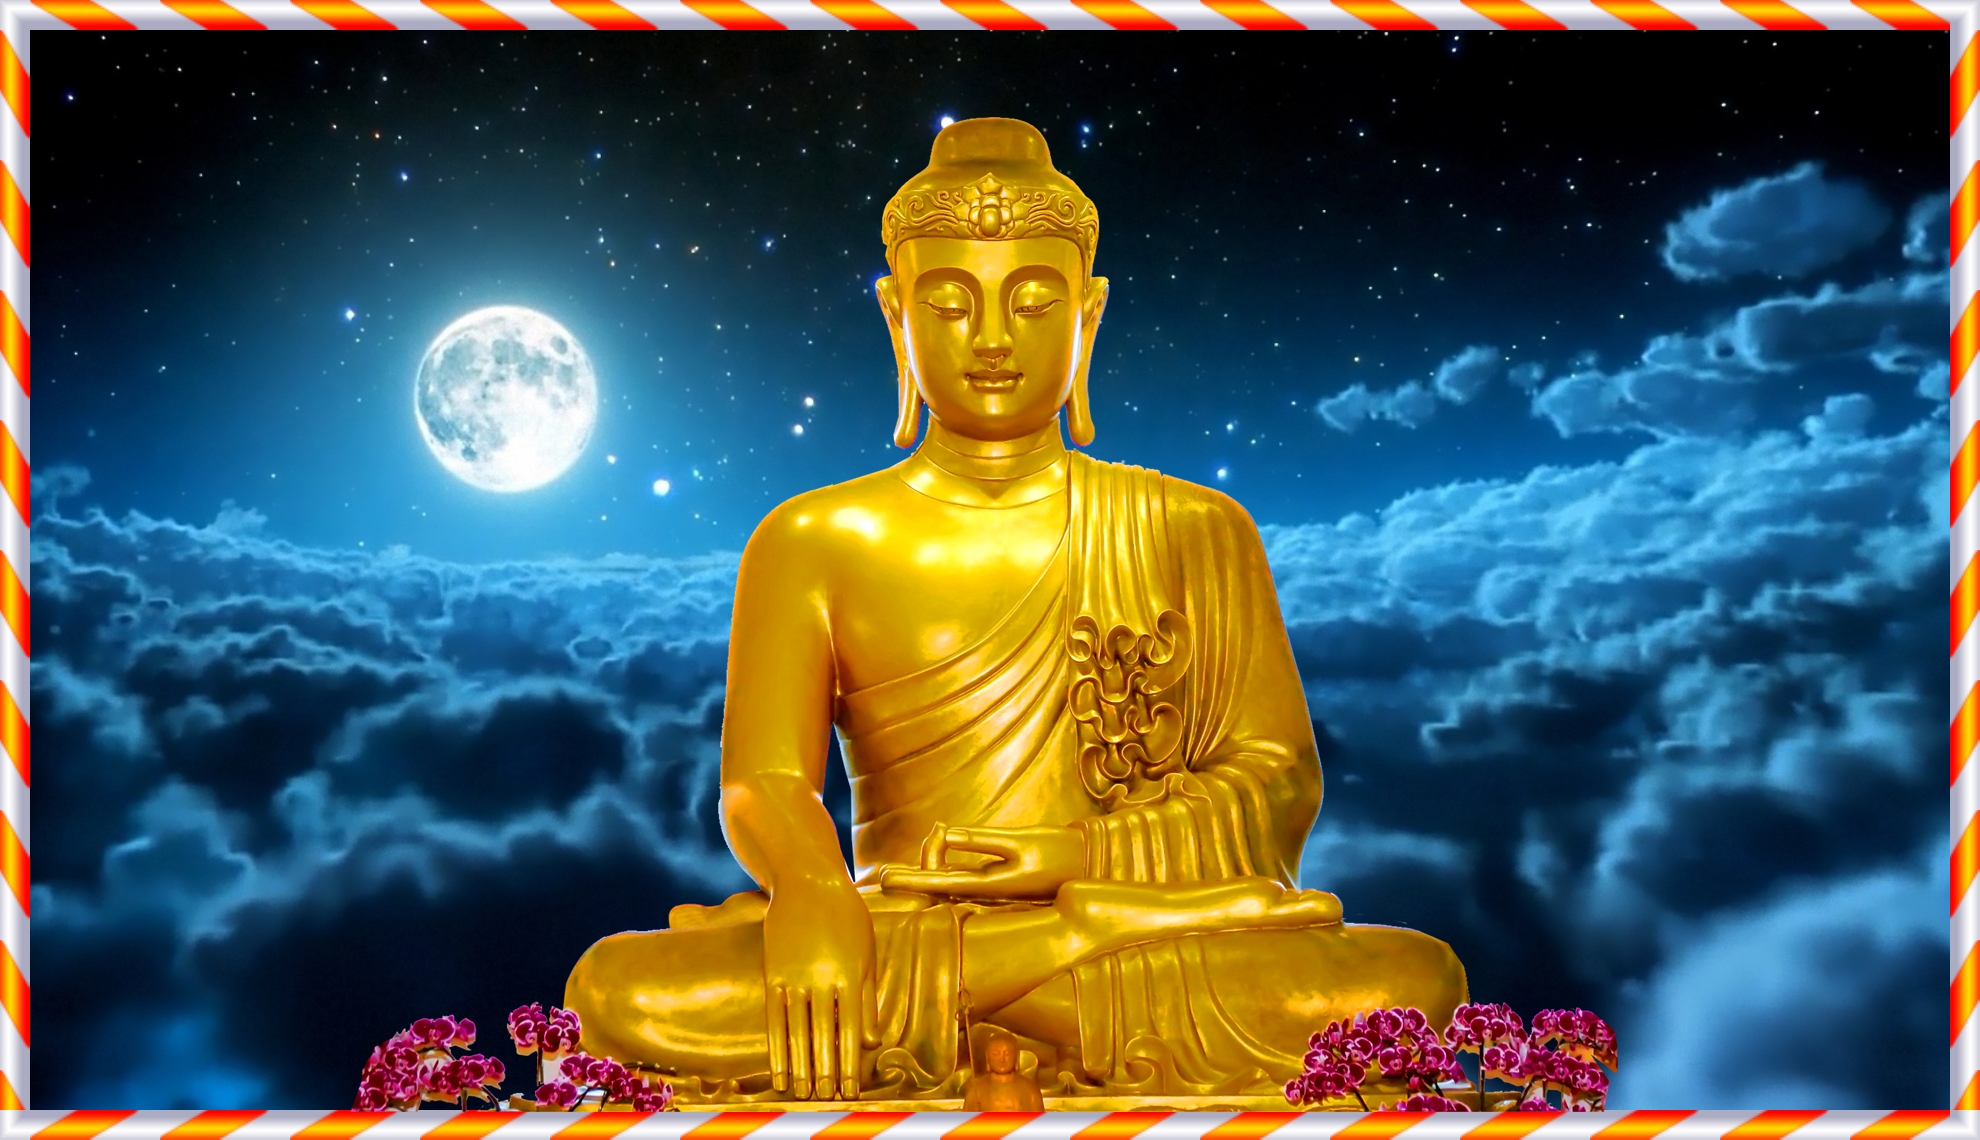 Hình Phật Thích Ca đẹp: Ảnh Phật Thích Ca đẹp được chụp từ góc độ tuyệt vời để thể hiện vẻ đẹp trân quý và thanh tịnh của Bồ Tát này. Hình ảnh này sẽ cho bạn một cảm giác bình an và an lạc khi ngắm nhìn.